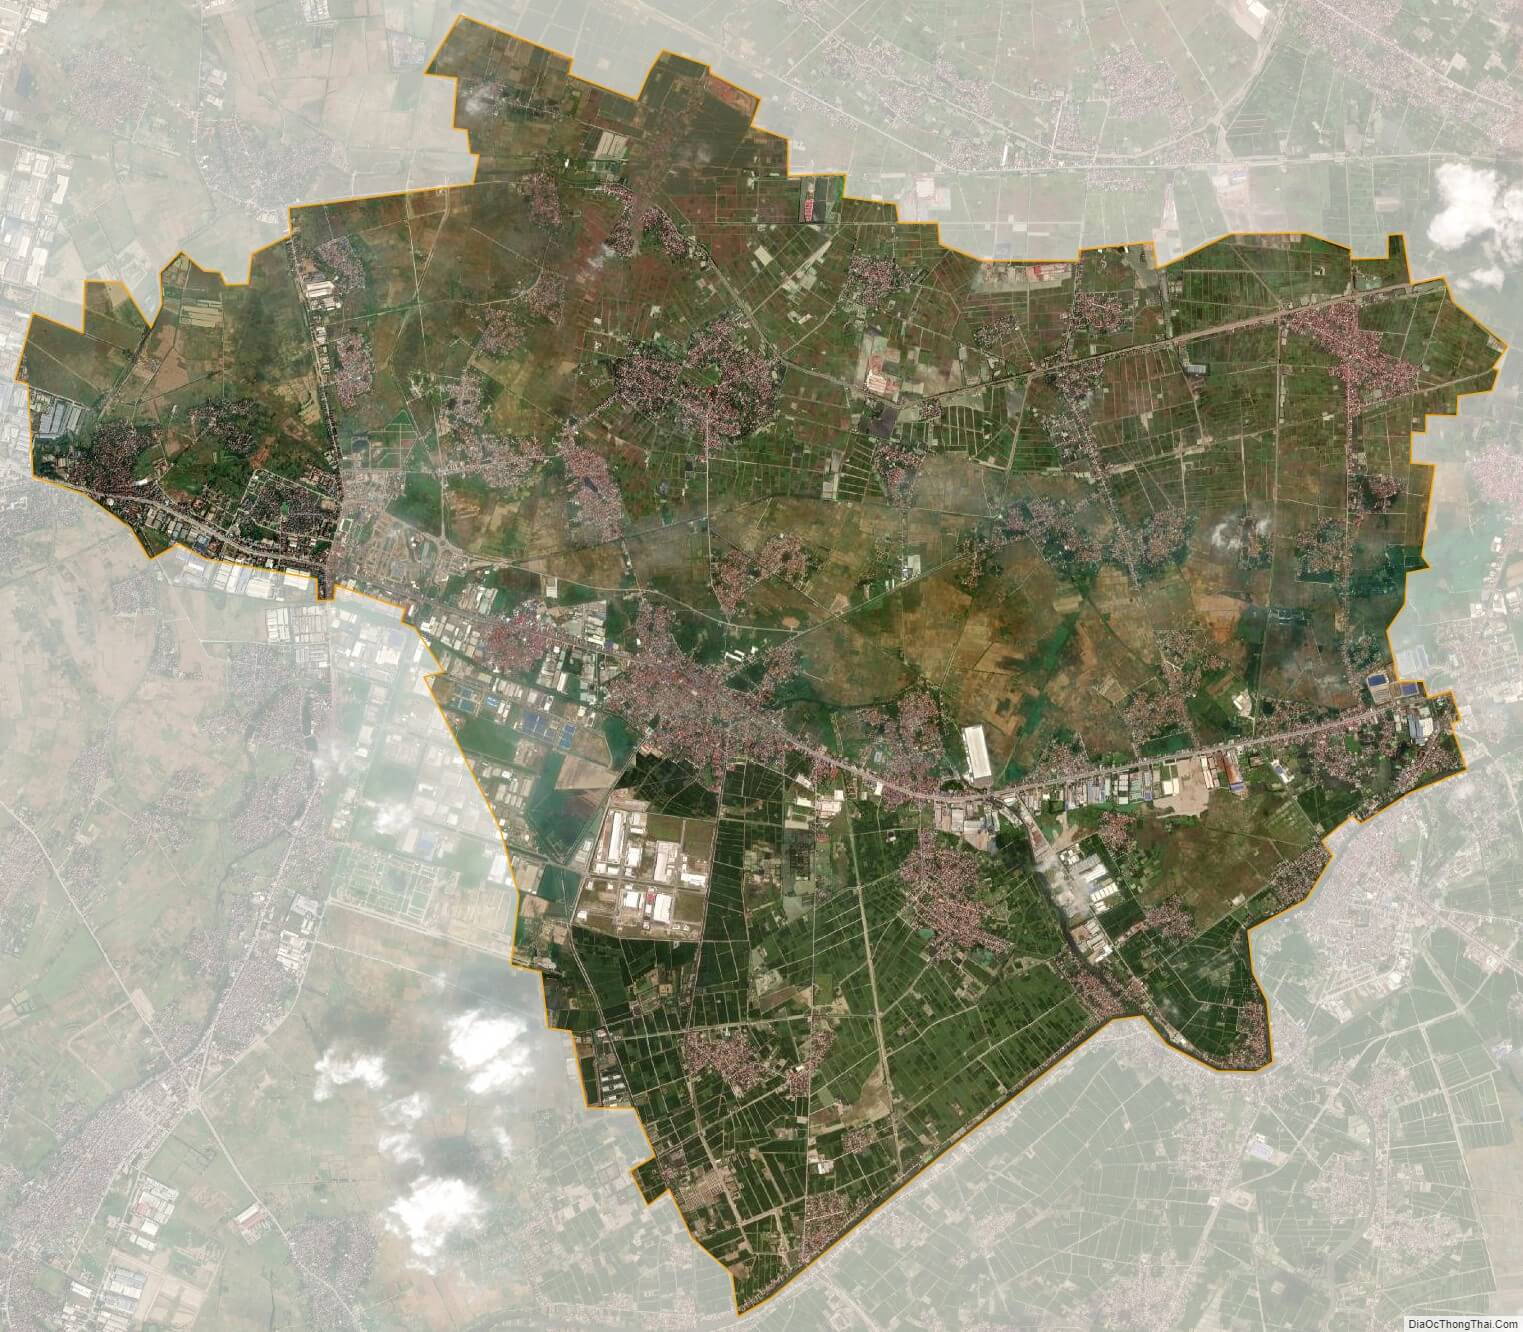 Bản đồ Thị xã Mỹ Hào Hưng Yên từ vệ tinh năm 2024 sẽ cho bạn cái nhìn rõ ràng về sự phát triển của thị xã. Các khu đô thị mới và các khu công nghiệp đang phát triển đến từng dự án, tạo điều kiện thuận lợi cho việc đầu tư và kinh doanh.